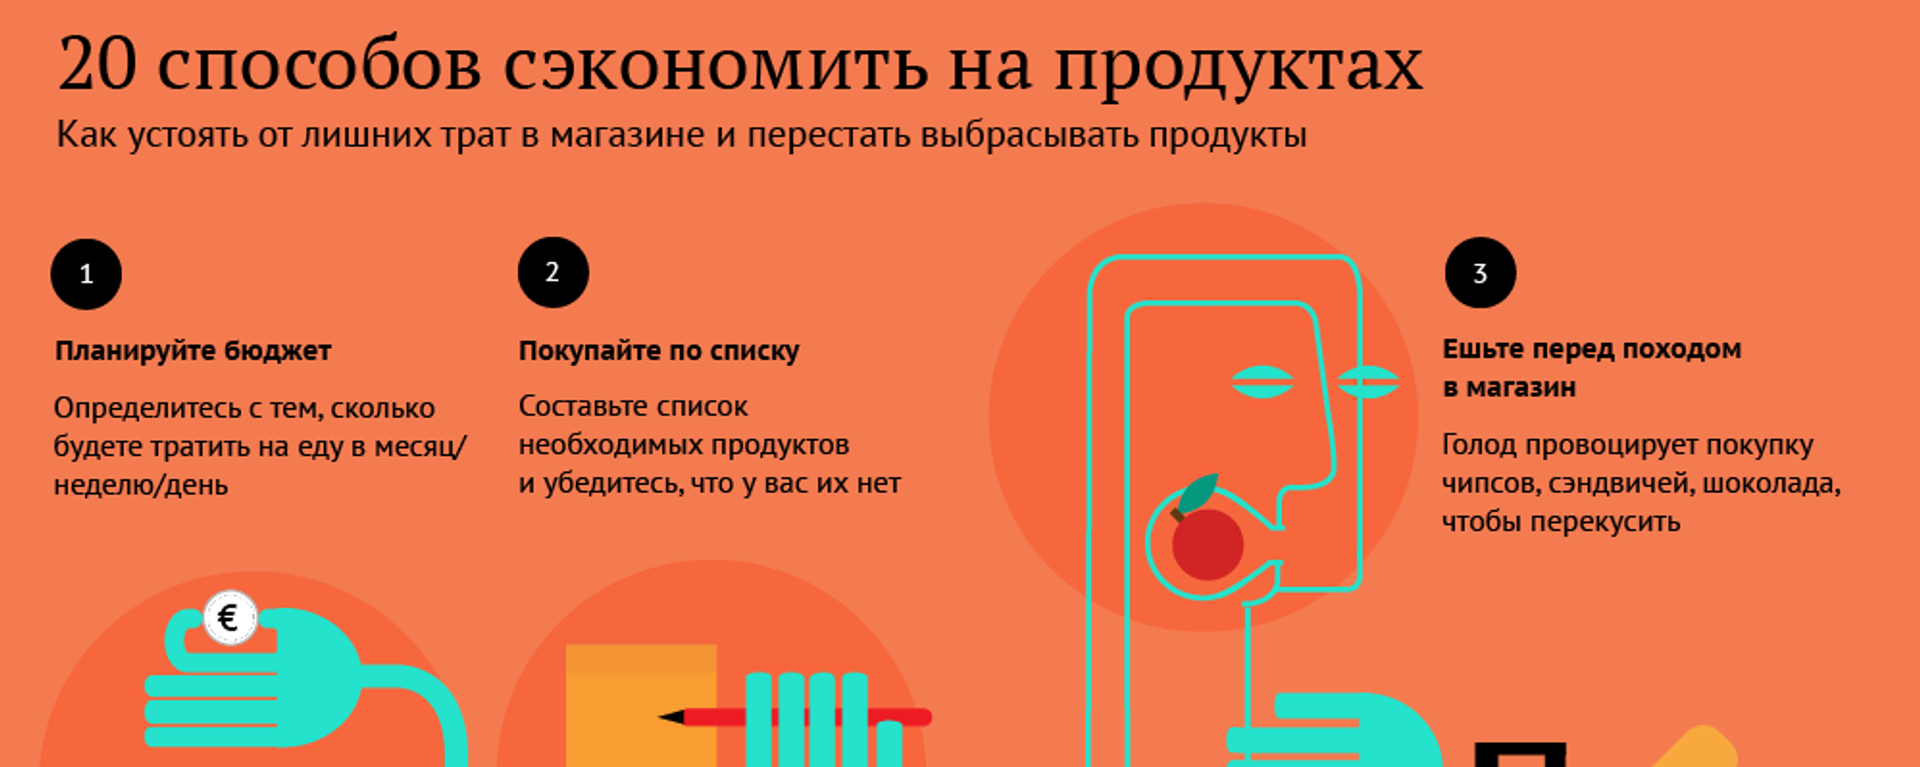 20 способов сэкономить на продуктах - Sputnik Абхазия, 1920, 03.10.2019